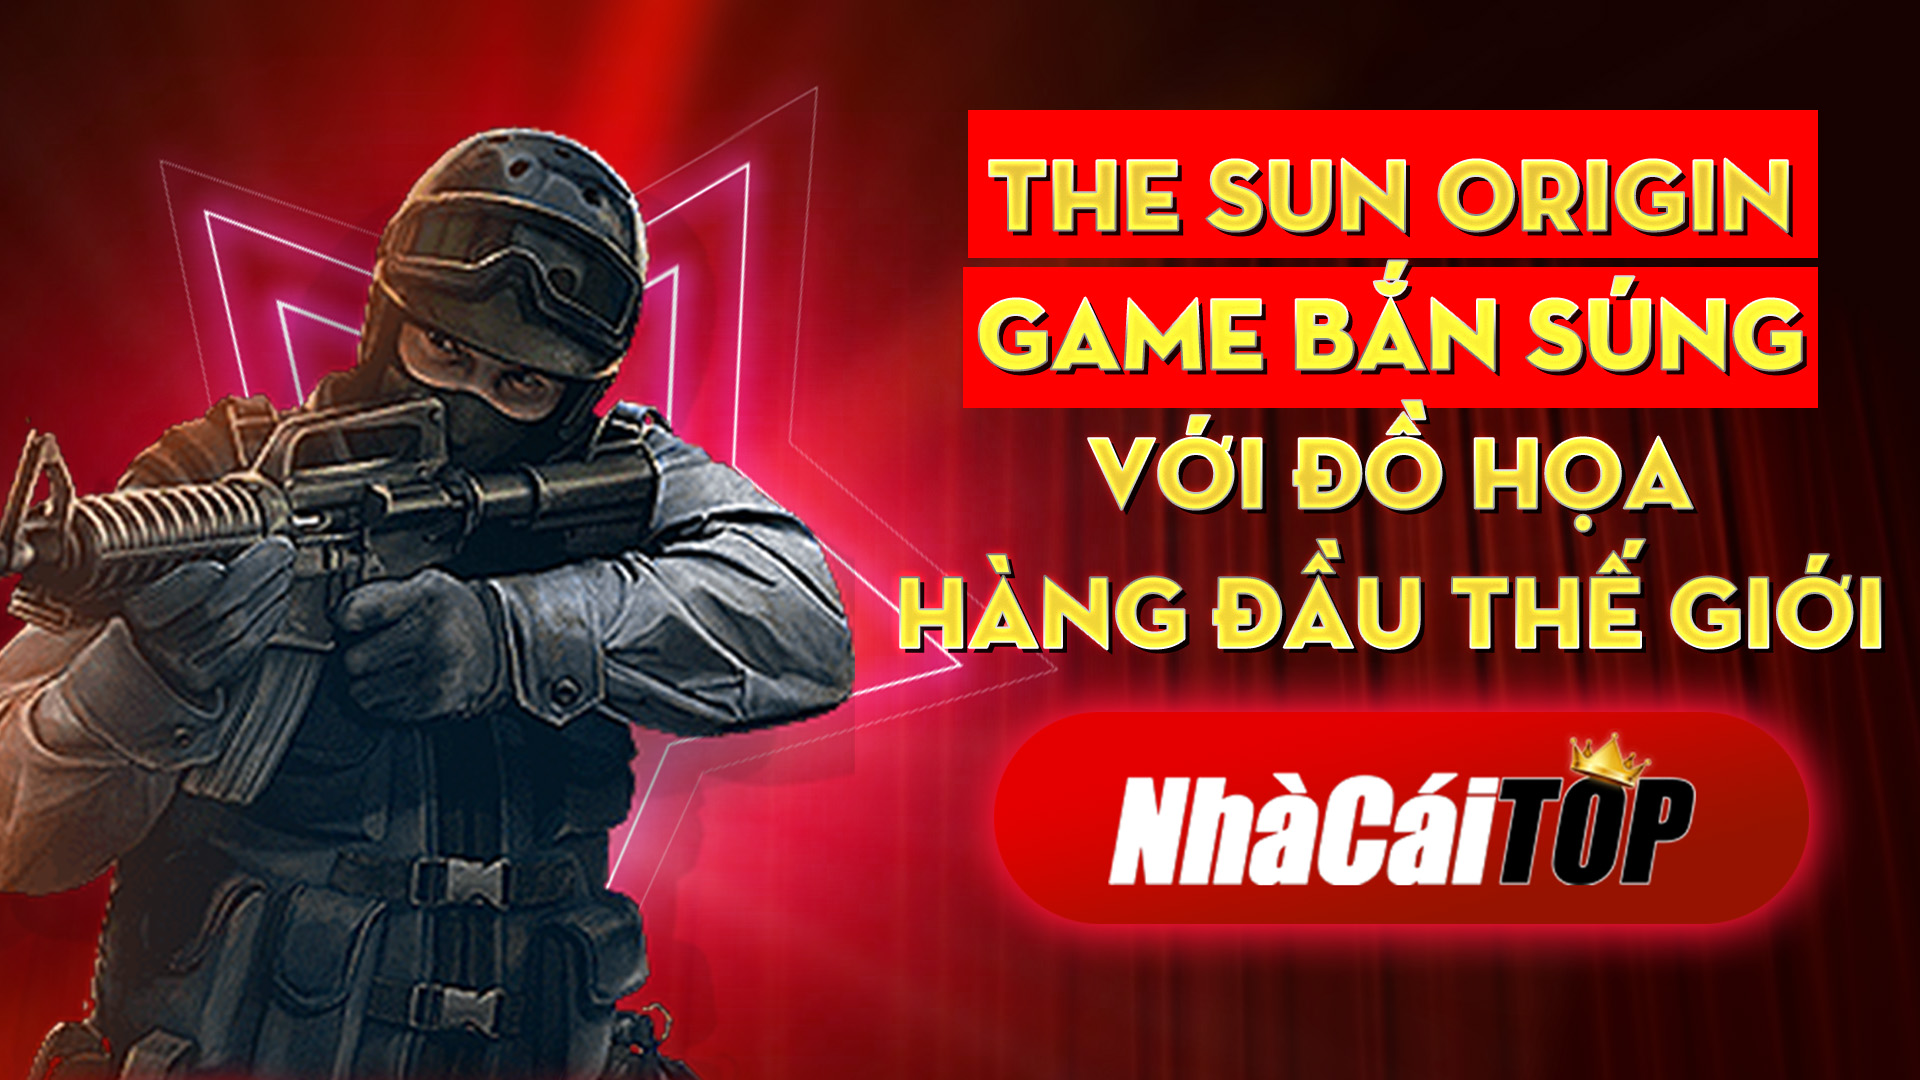 314 The Sun Origin – Game Ban Sung Voi Djo Hoa Hang Djau The Gioi